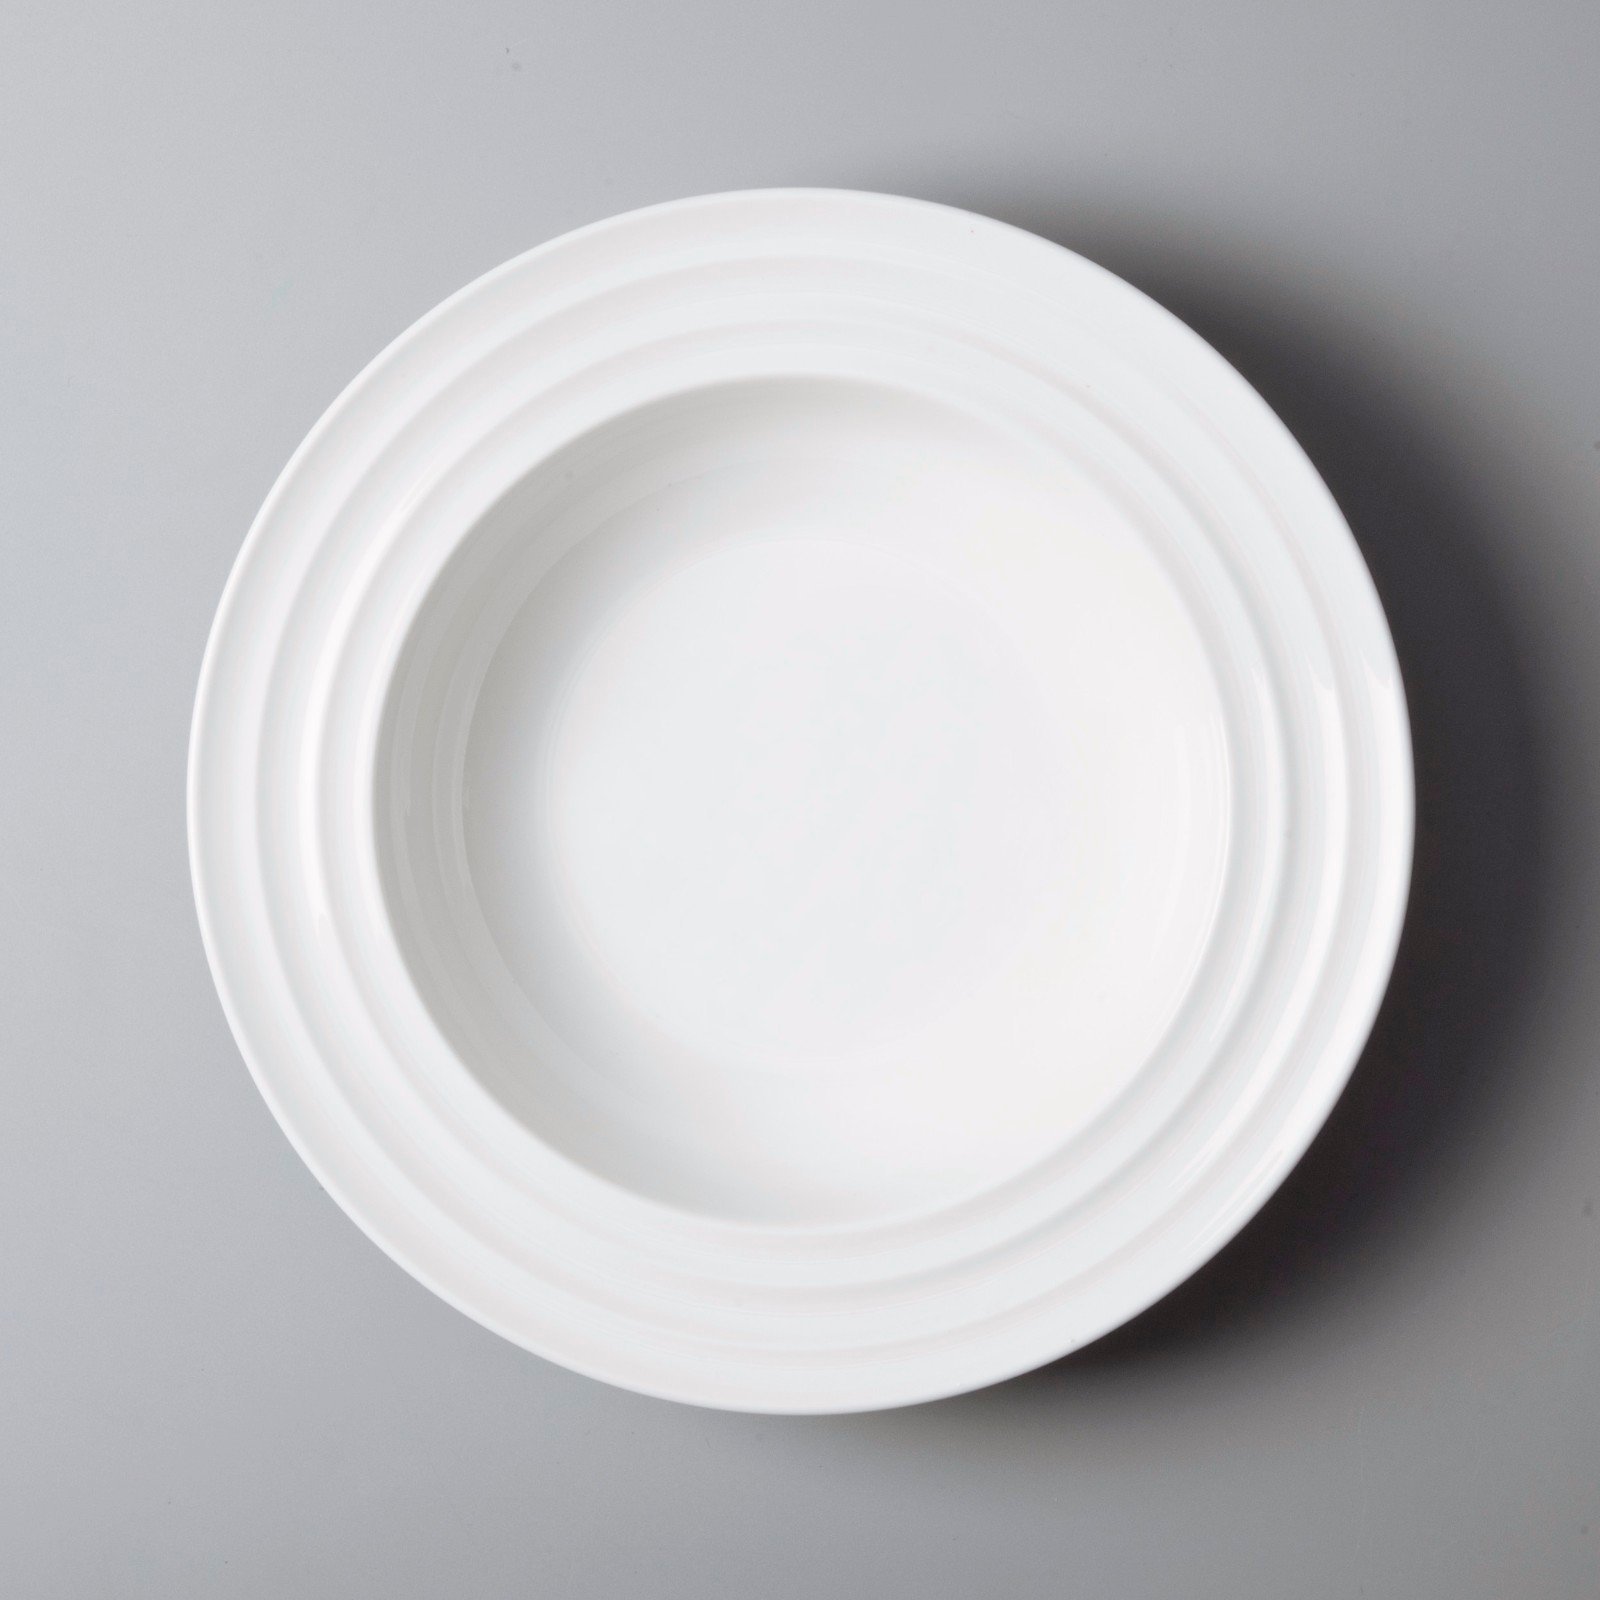 Italian style commercial restaurant plates manufacturer for restaurant